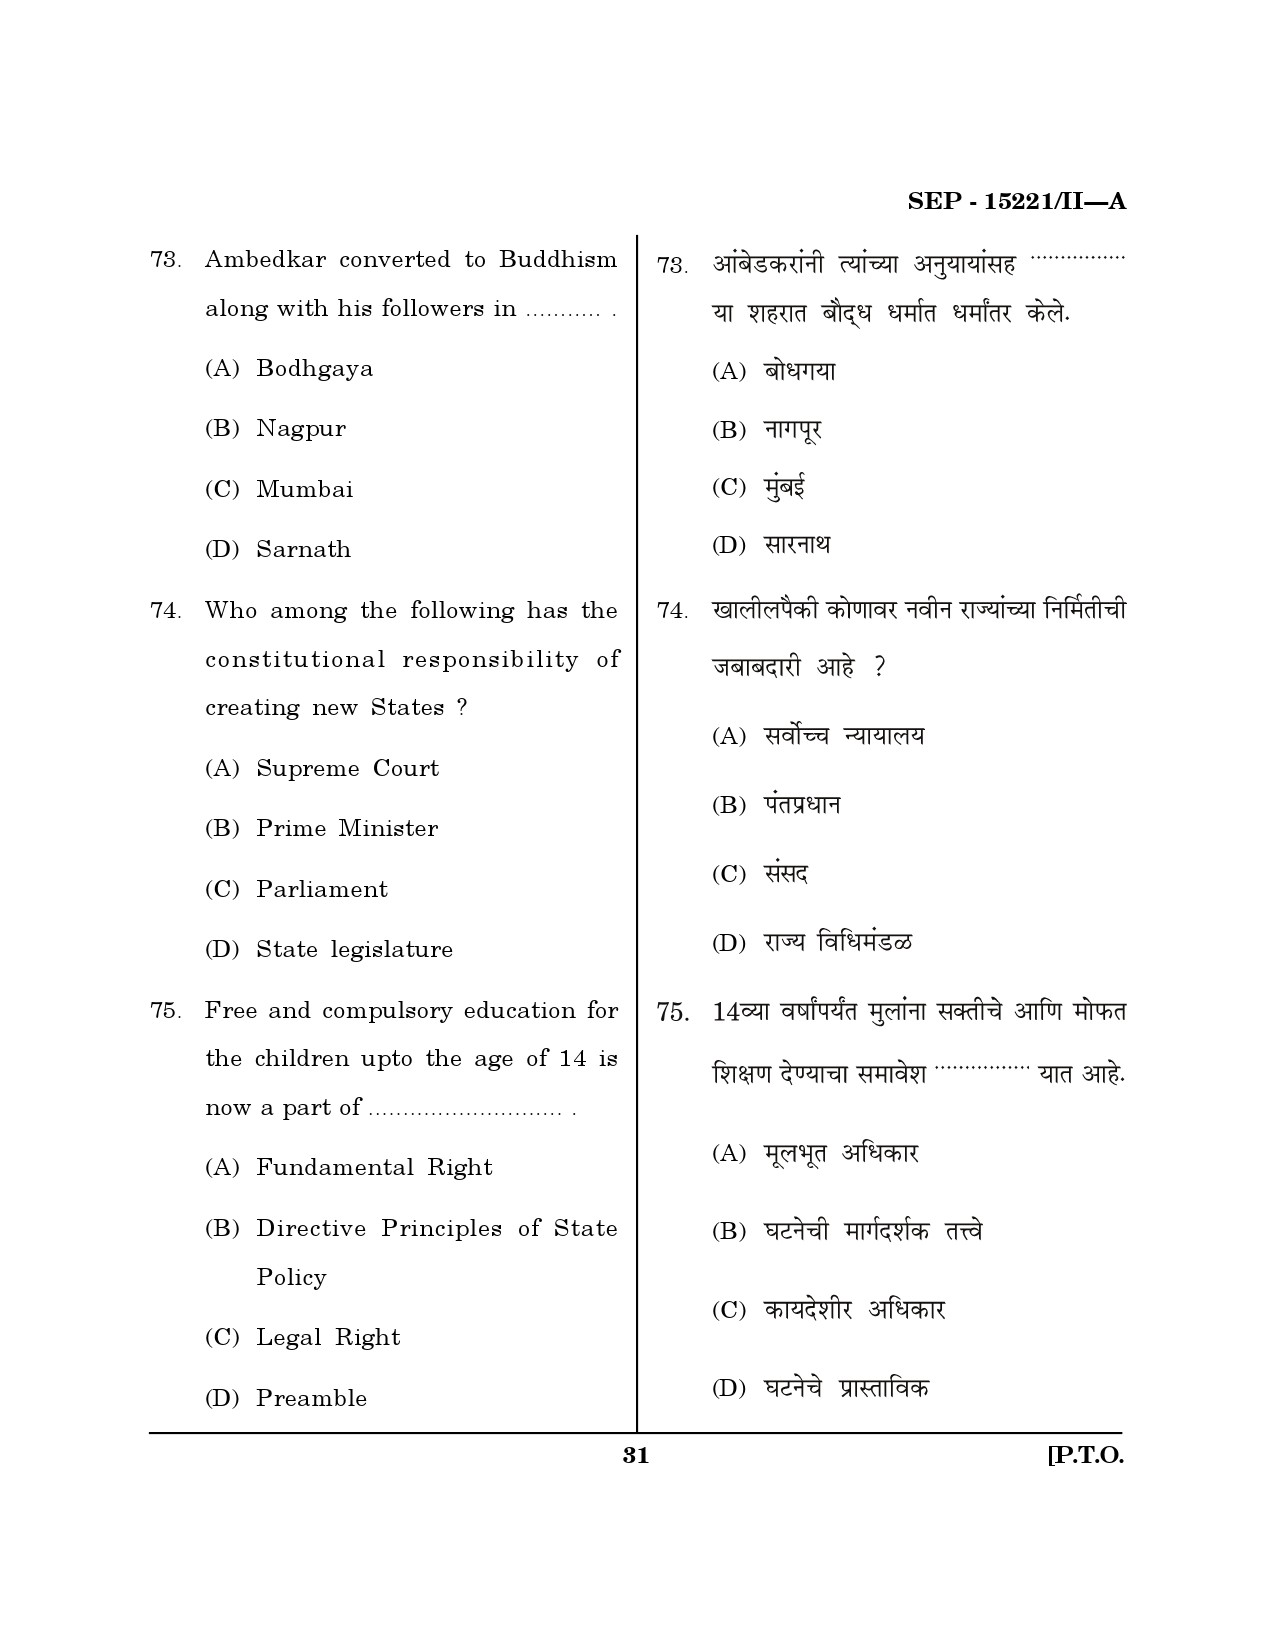 Maharashtra SET Political Science Exam Question Paper September 2021 30